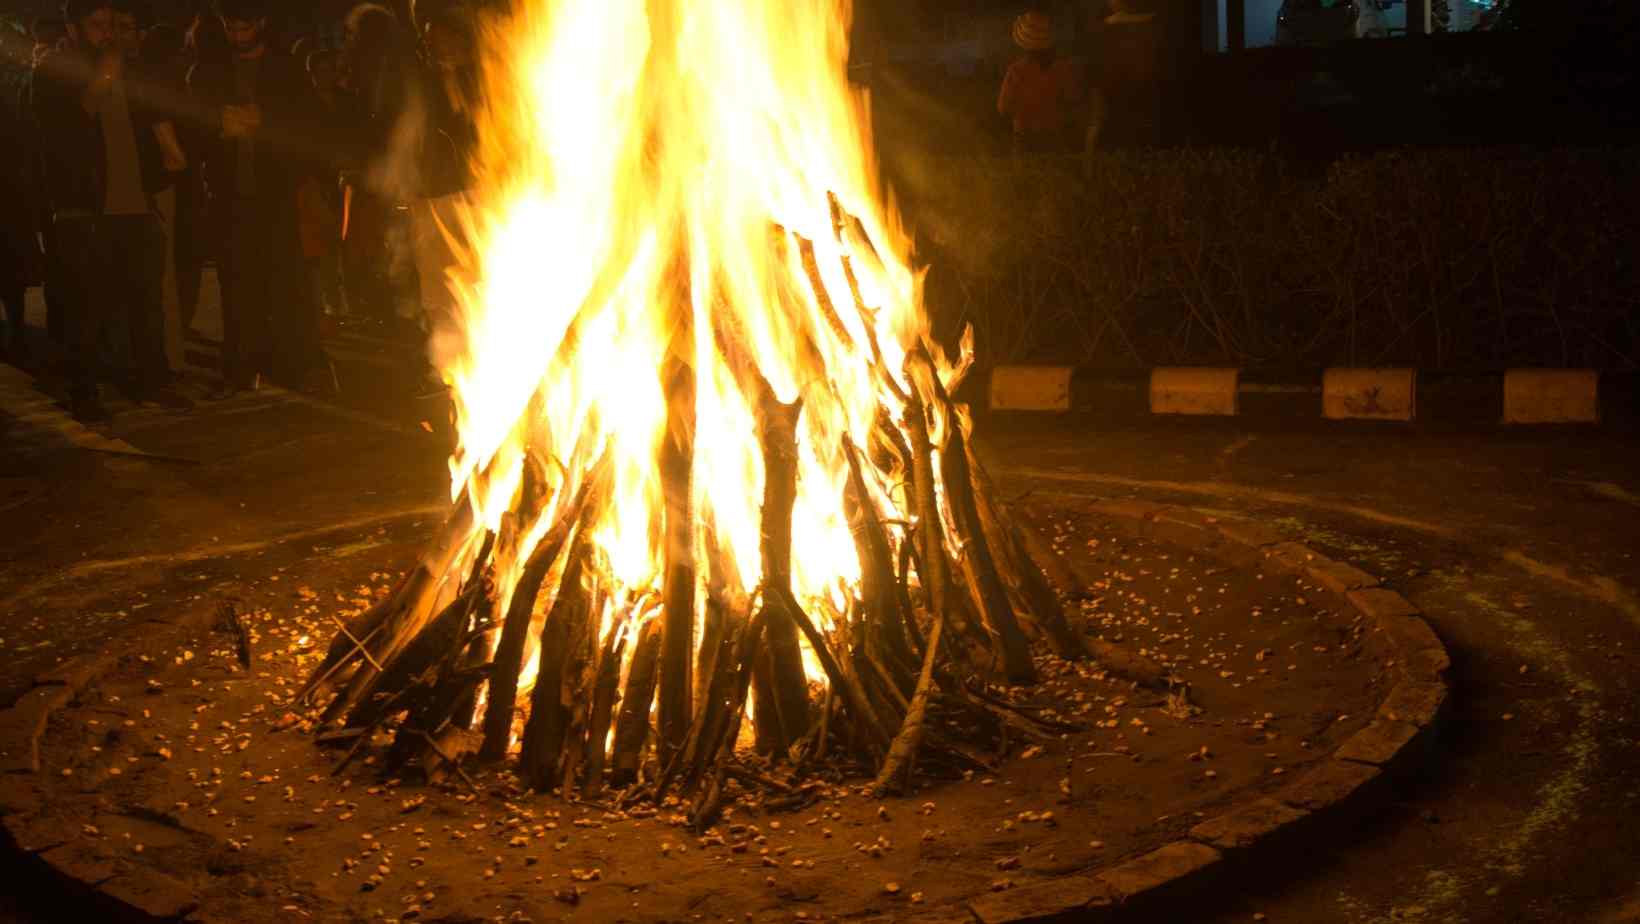 Lohri - Winter Festivals In India